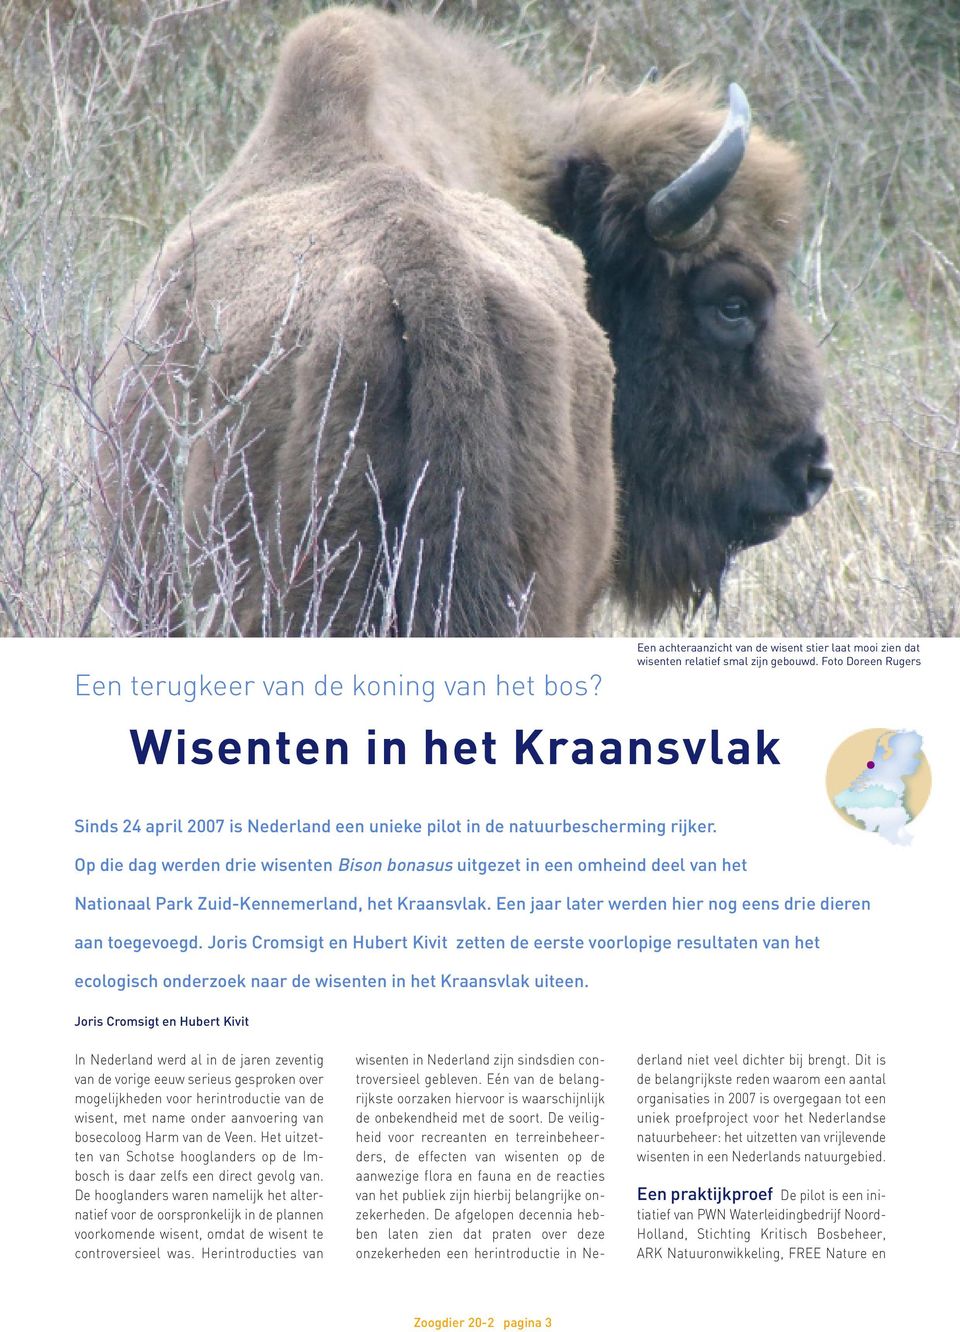 Op die dag werden drie wisenten Bison bonasus uitgezet in een omheind deel van het Nationaal Park Zuid-Kennemerland, het Kraansvlak. Een jaar later werden hier nog eens drie dieren aan toegevoegd.